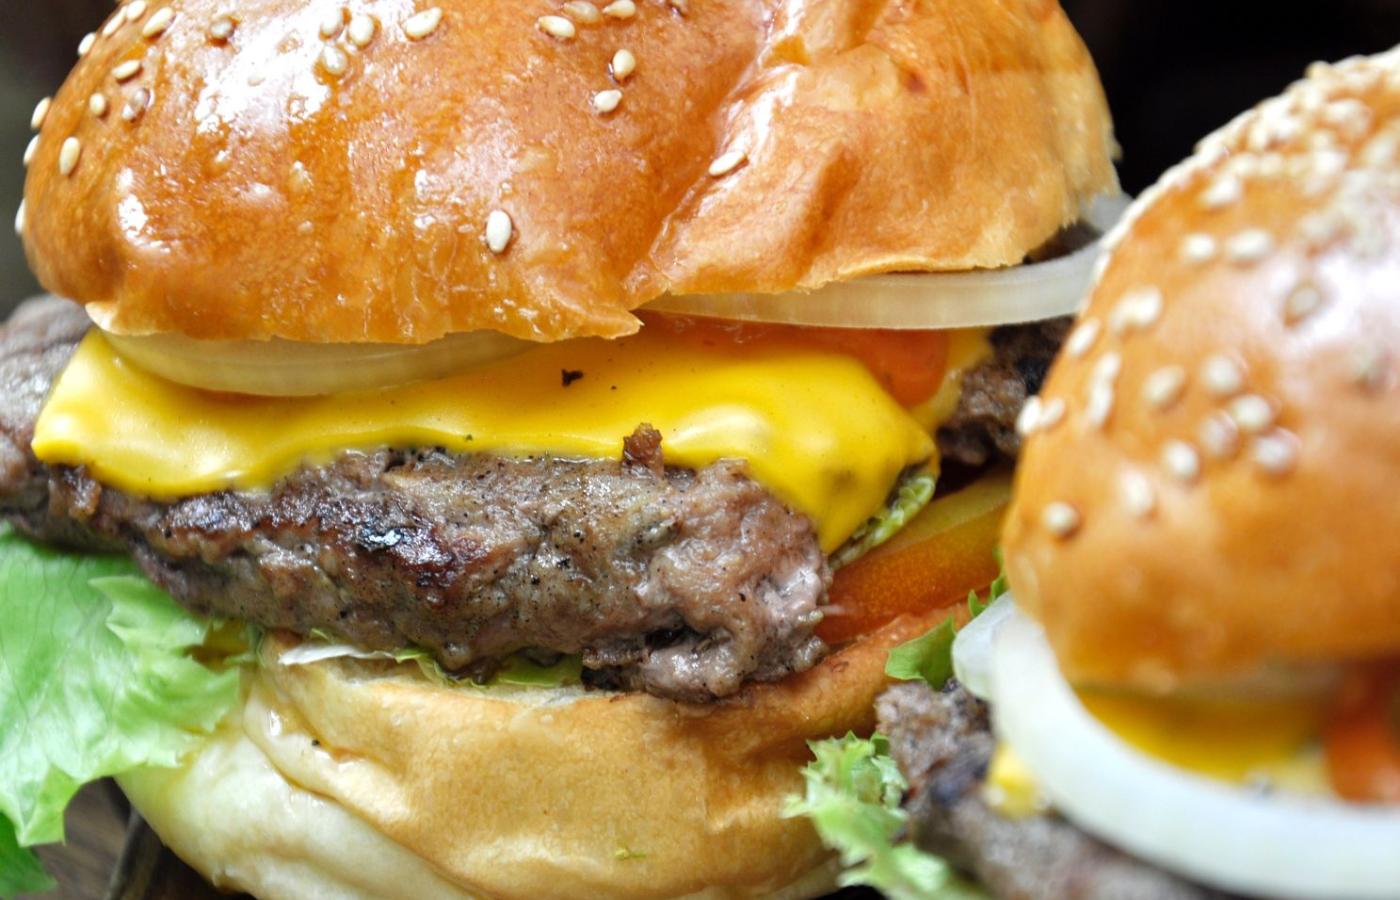 Impossible Burger nie tylko smakuje jak prawdziwy burger z wołowiny, jest też etyczny i bezpieczny dla środowiska.